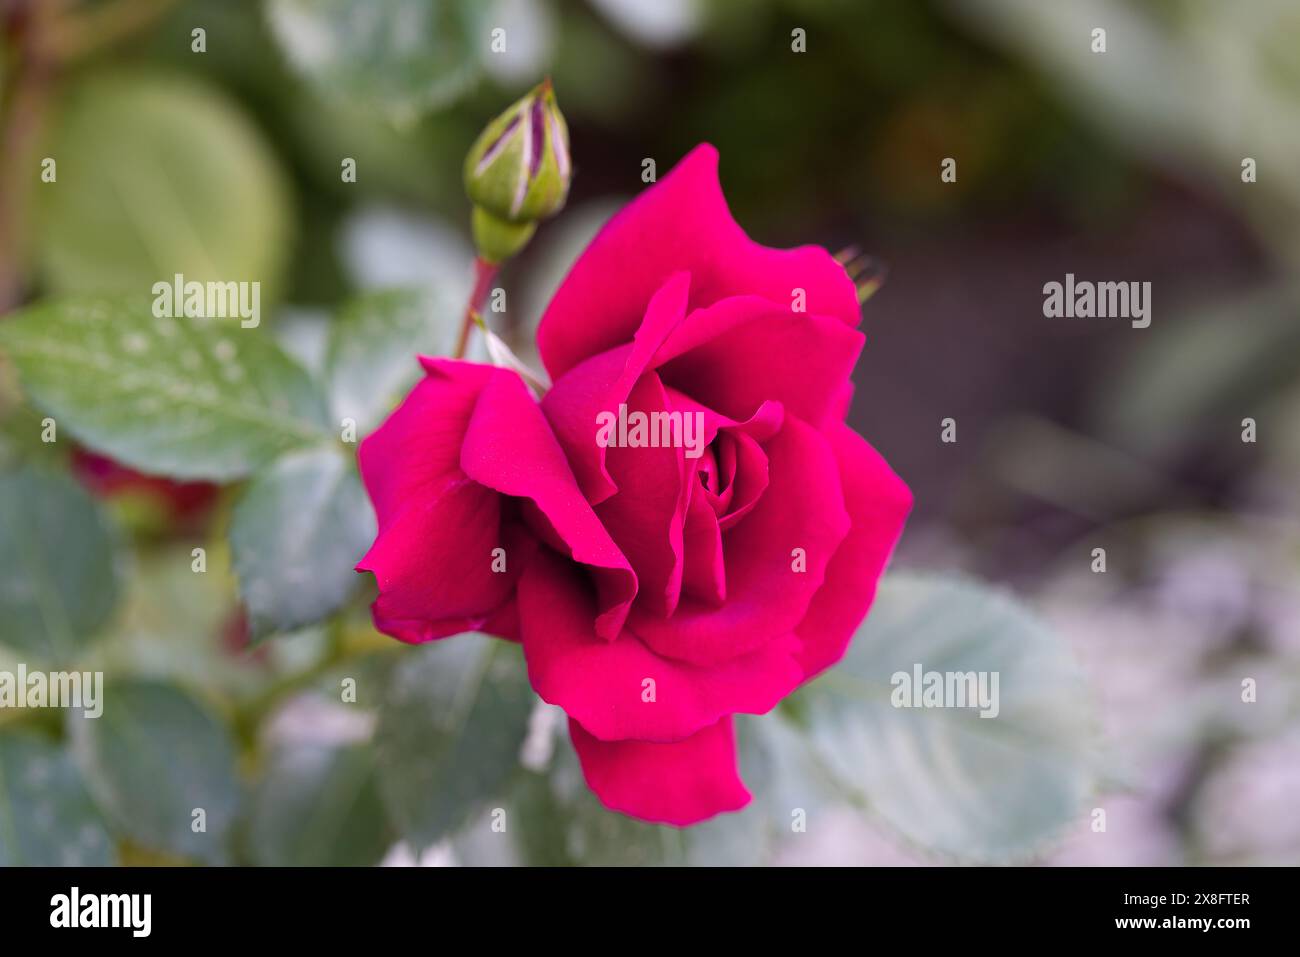 Rote und weiße Rose Makroaufnahme. Rose ist eine Blume aus Liebe, Leidenschaft und romantischen Gefühlen. Eine symbolische Blume für Liebhaber, Glückwunsch zum Urlaub Stockfoto